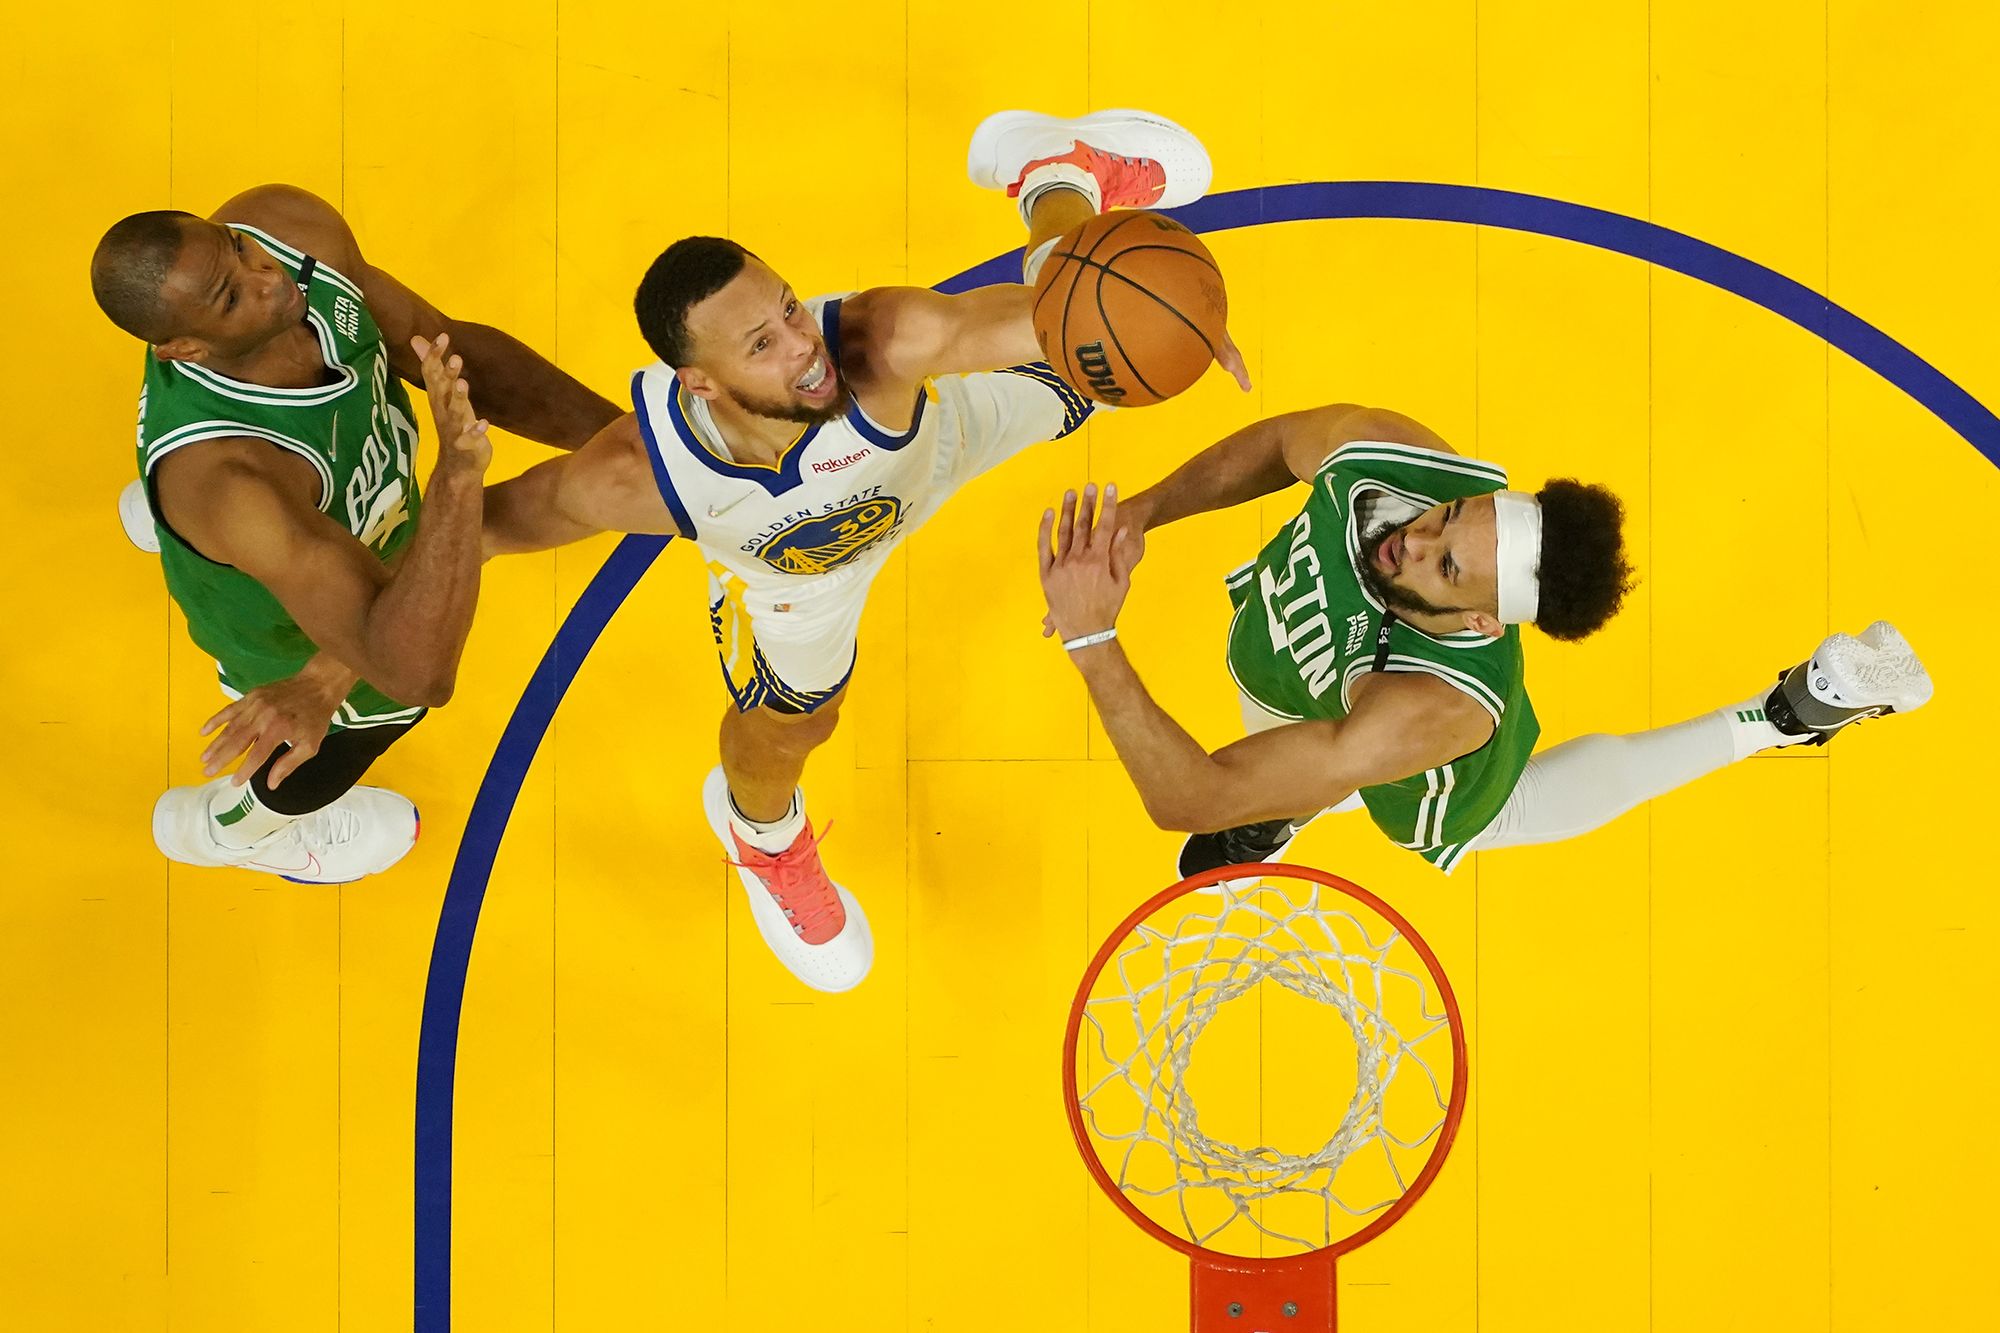 2022 NBA Finals Preview: Warriors vs. Celtics